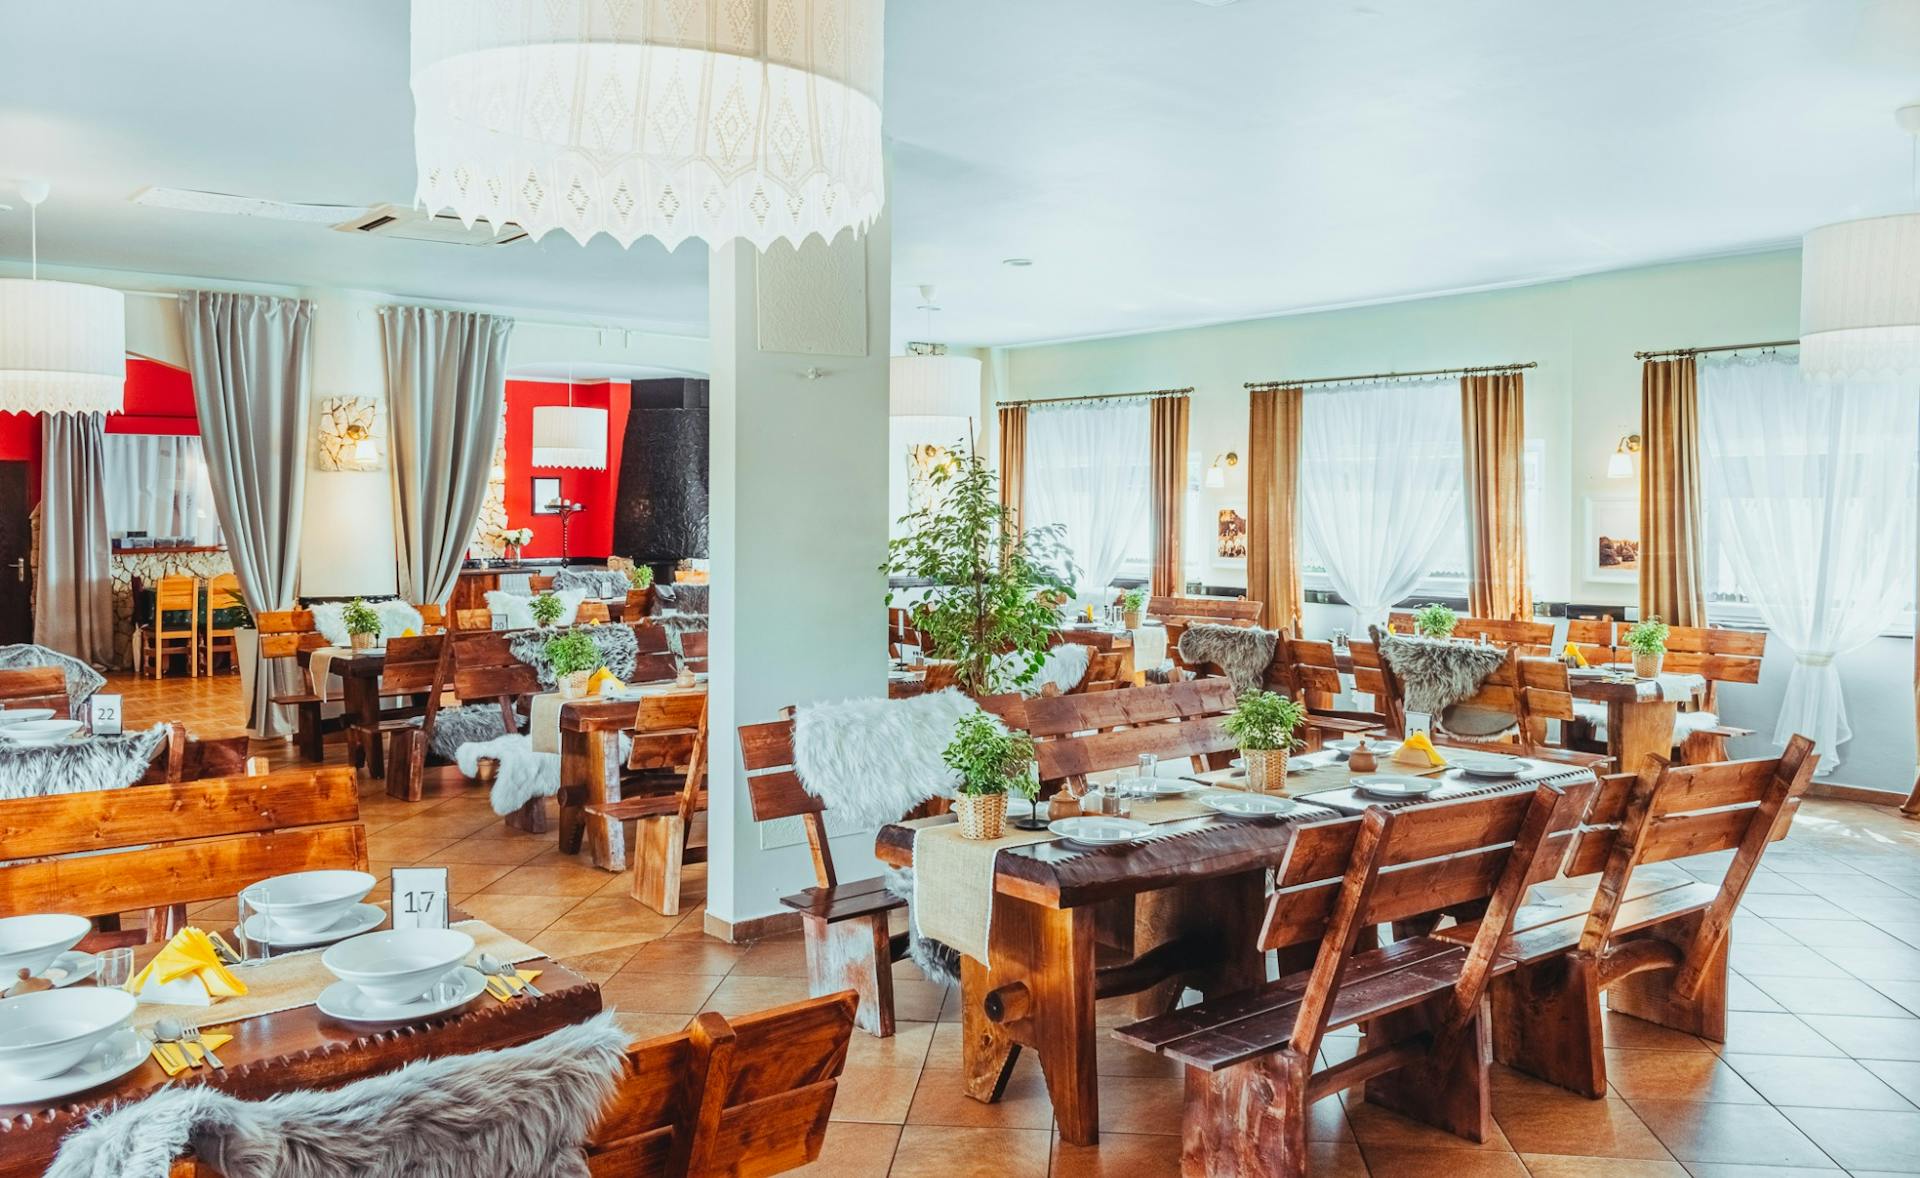 Restauracja idealna dla rodzin z dziećmi w Sosnowcu